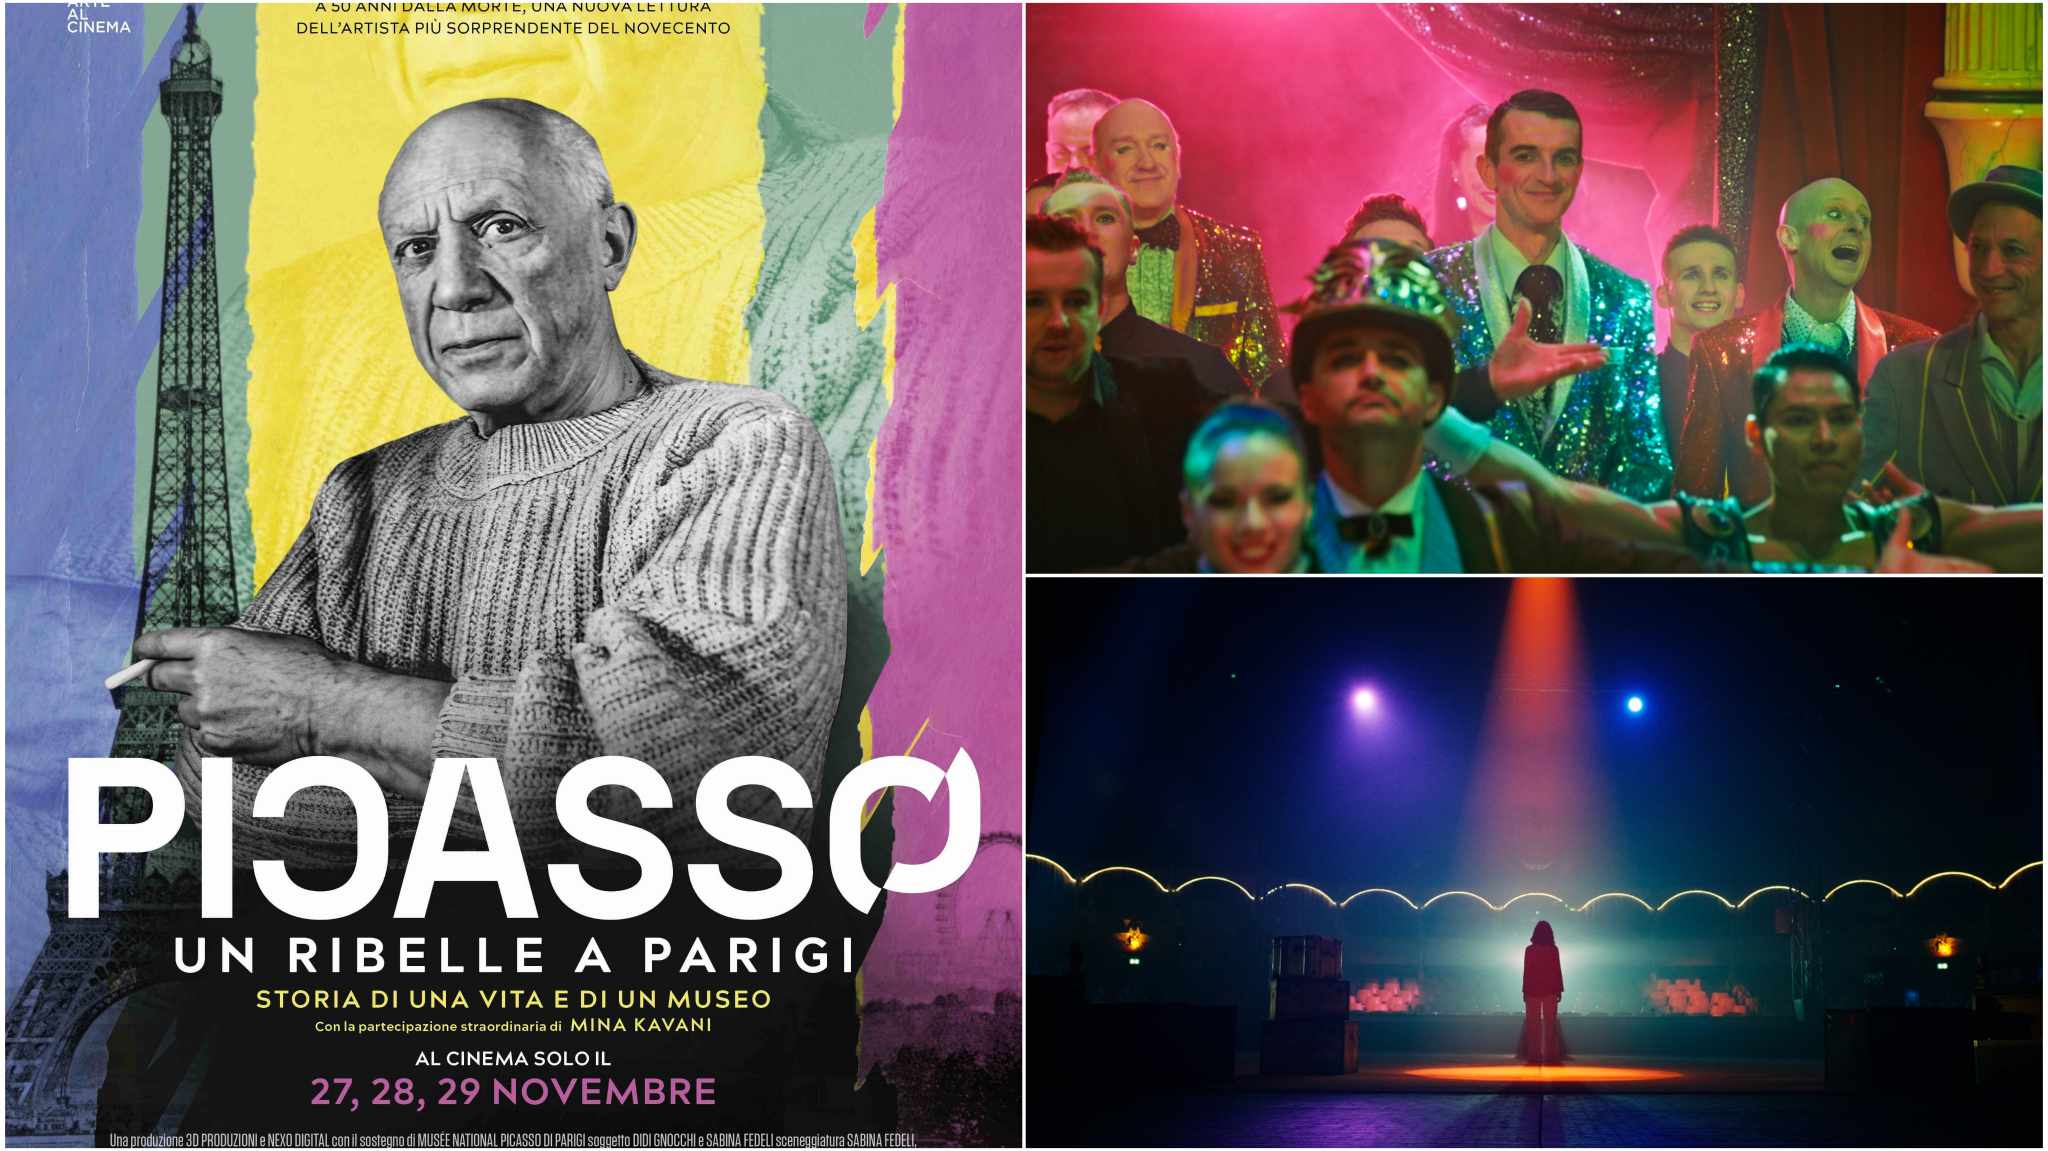 Picasso. Un ribelle a Parigi, al cinema a novembre con la partecipazione di Mina Kavani